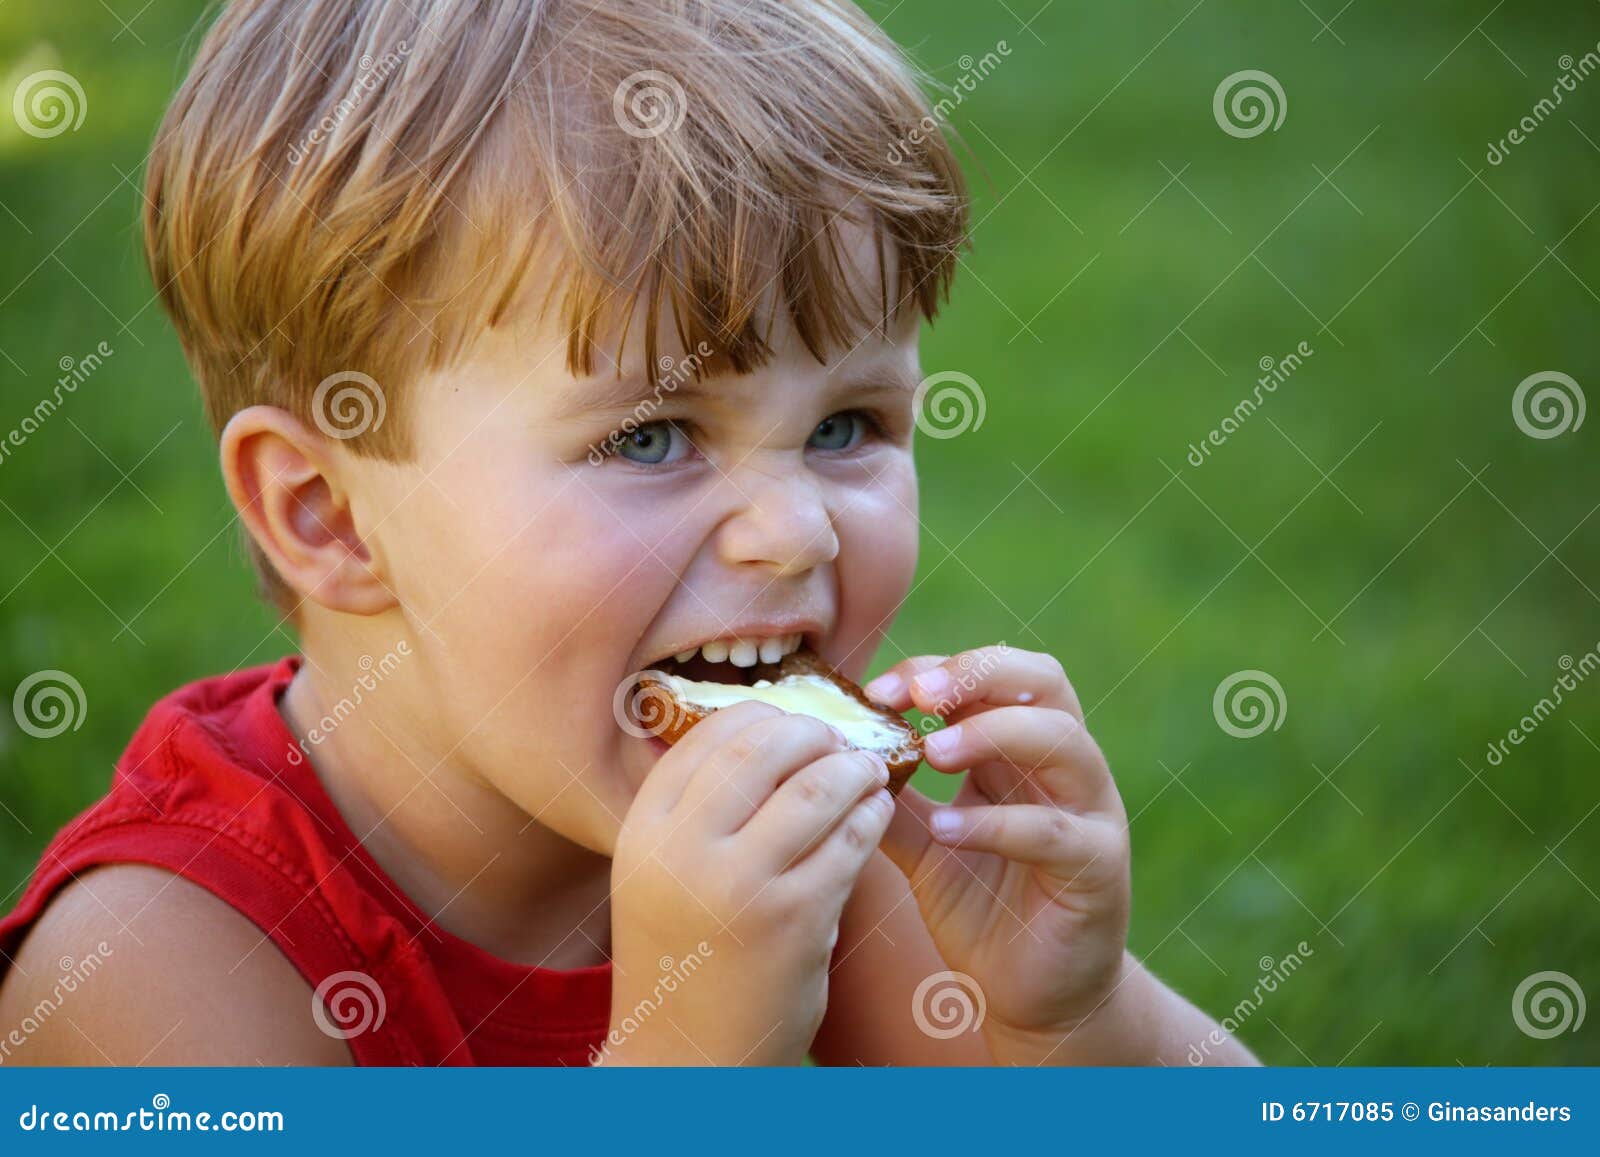 Дети едят масло. Мальчик ест бутерброд. Кусает бутерброд. Мальчик с бутербродом. Ребенок ест бутерброд.